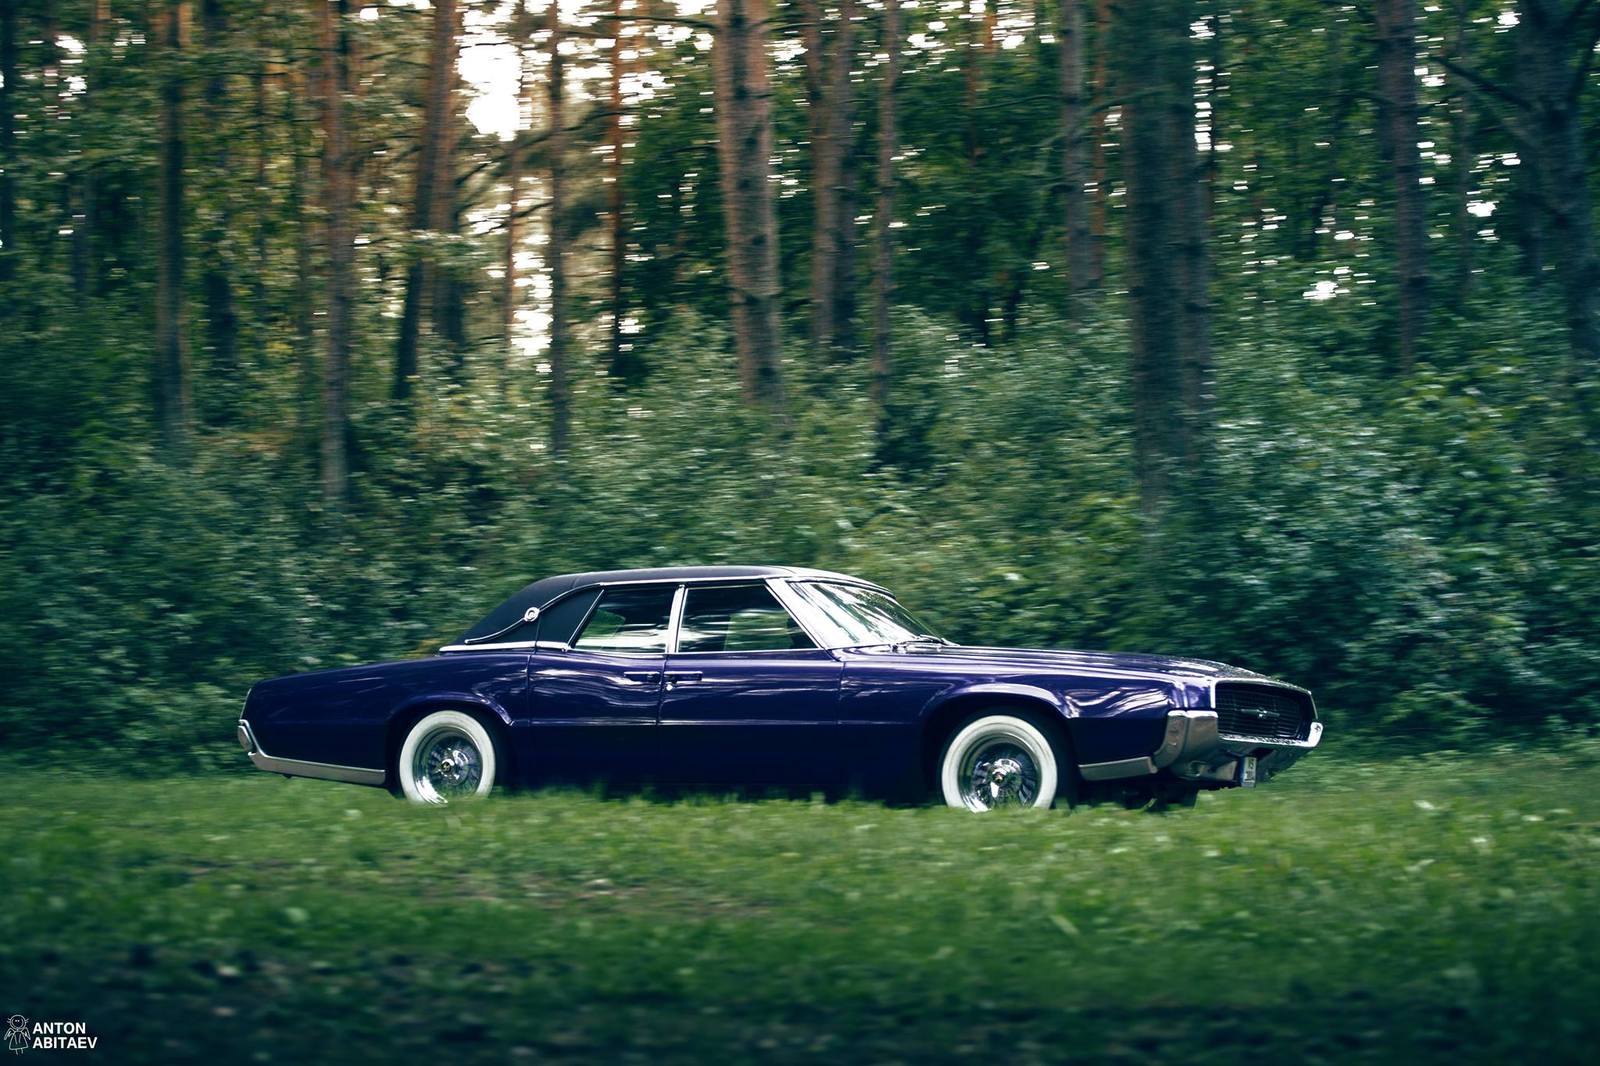 Реставрация автомобиля Ford Thunderbird '67 машина, районе, двери, такой, Латвии, момент, только, работы, после, чтобы, Потом, состоянии, техосмотр, вариант, более, будущем, фотографий, около, случился, машиной